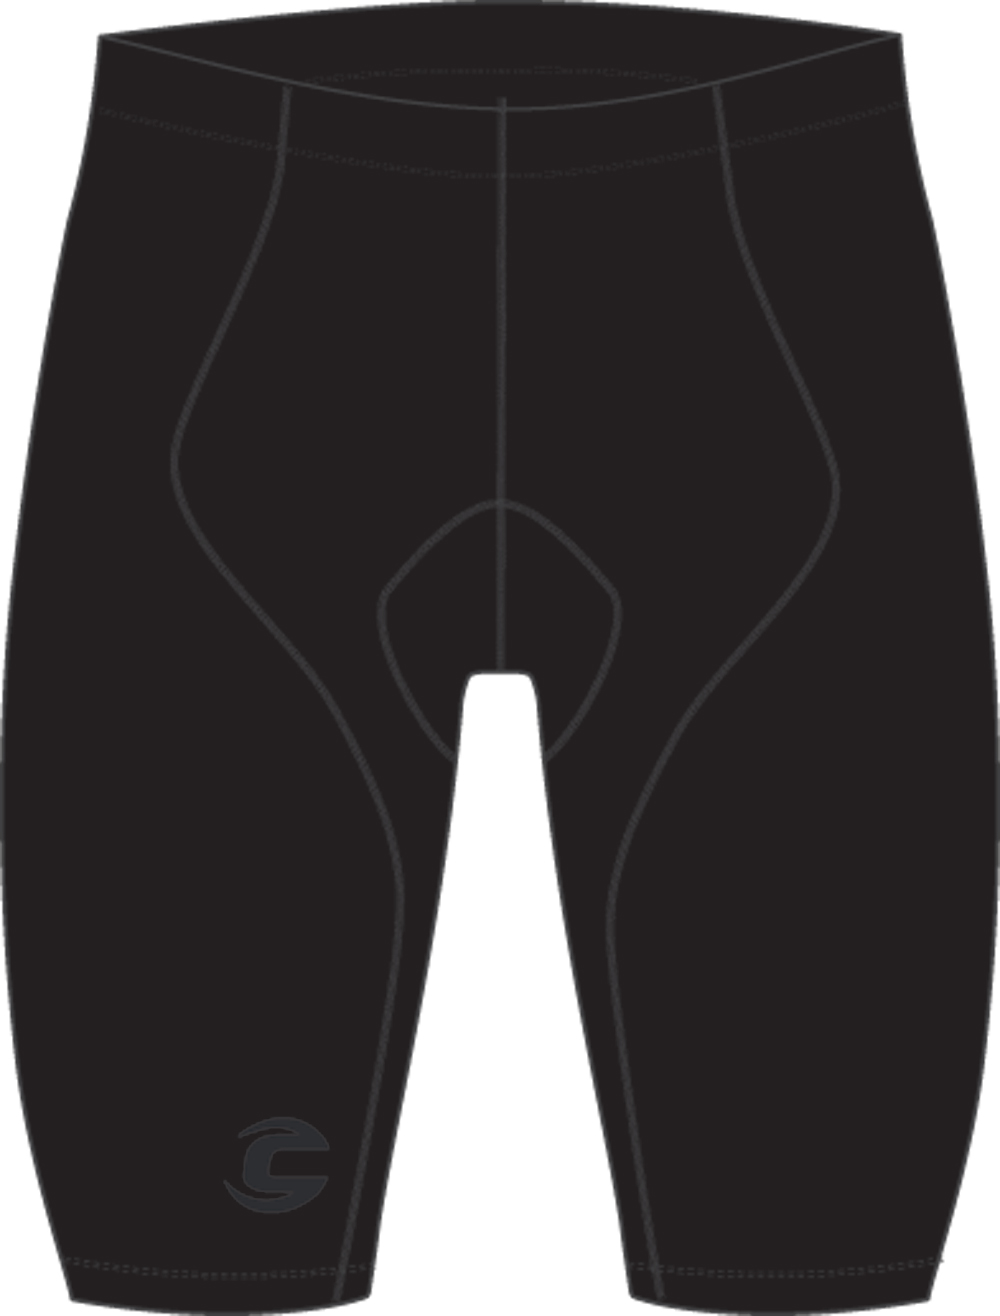 Cannondale Bike Shorts Size Chart